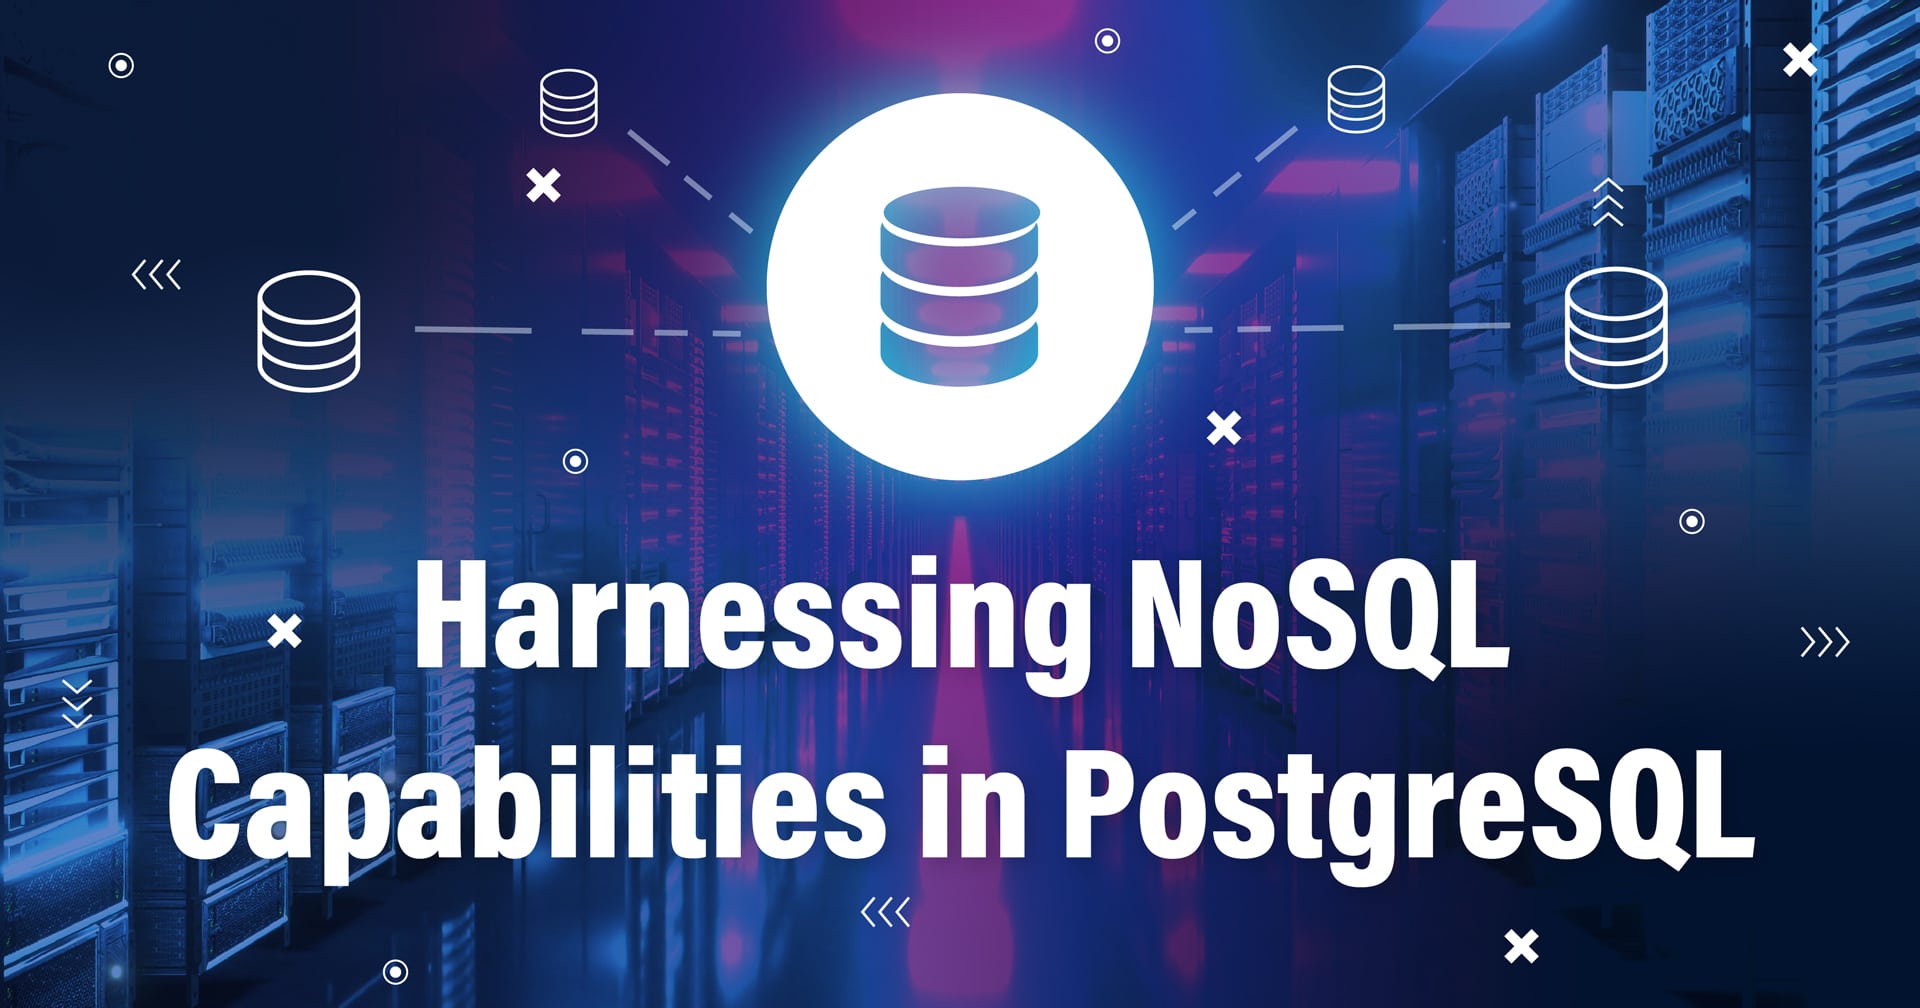 Bild mit einem Symbol, das eine mit anderen Datenbanken verbundene Datenbank darstellt, und dem Text Harnessing NoSQL Capabilities in PostgreSQL am unteren Rand.